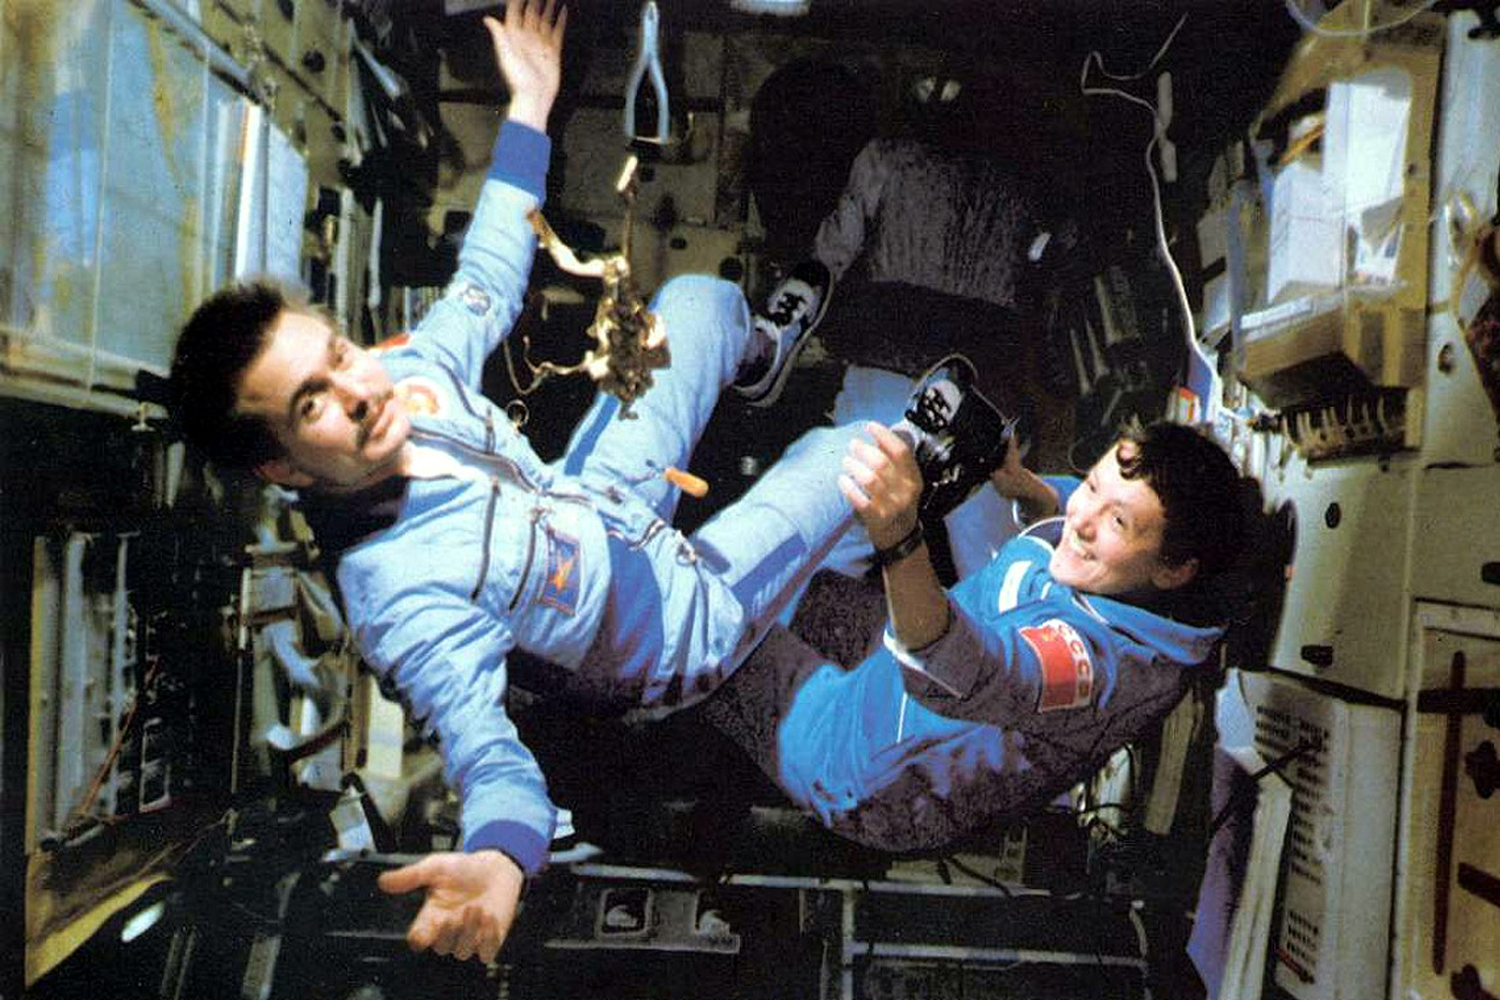 ชุดเพนกวินรุ่นปรับปรุง บนสถานีอวกาศซัลยูต 7 (Salyat-7) ในปี 1982 (Photo : http://www.spacefacts.de)